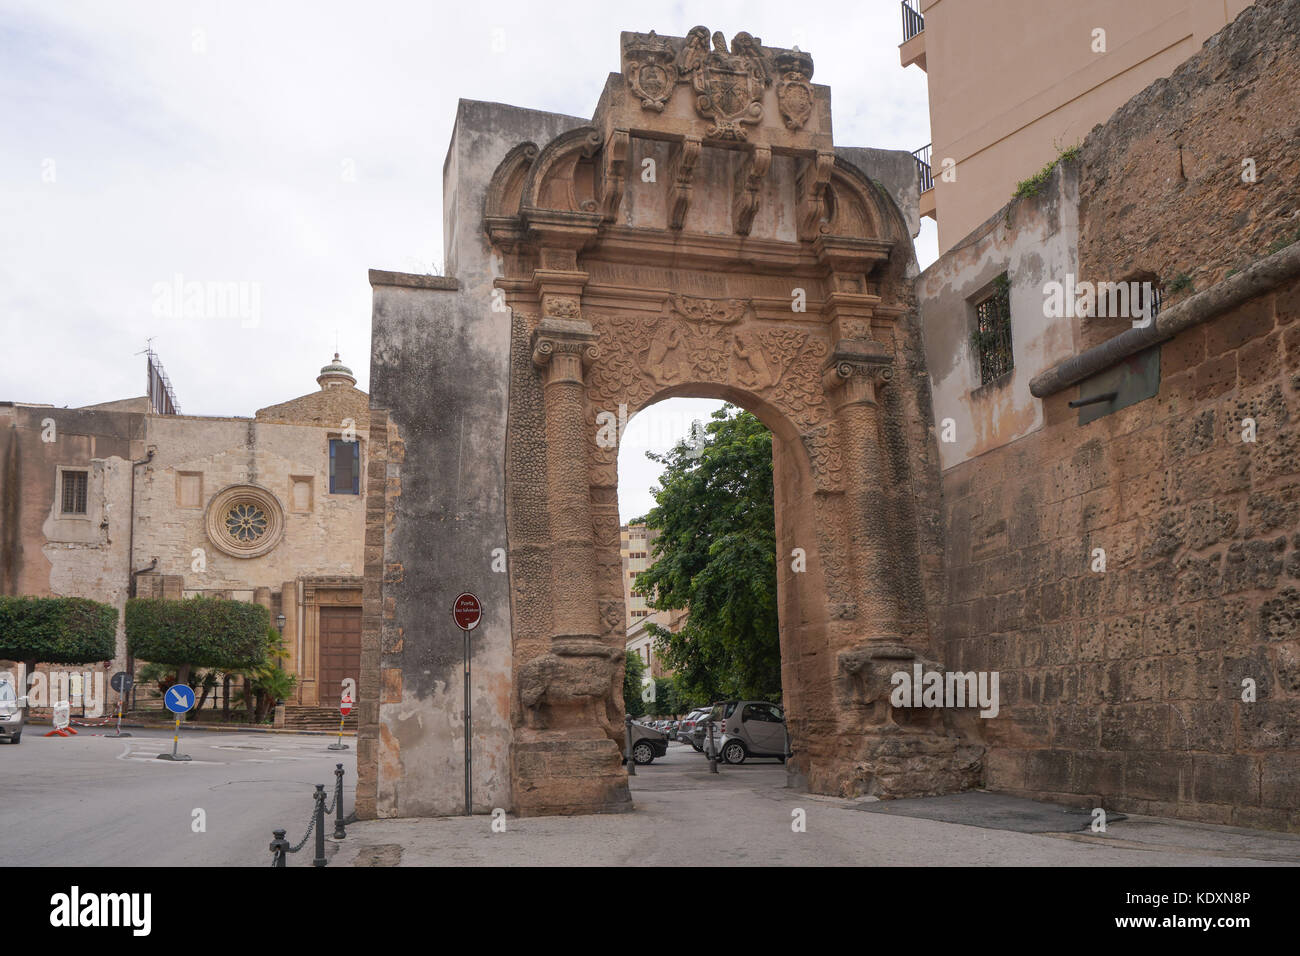 Die Porta San Salvatore City Gate in Sciacca. Aus einer Serie von Fotos in Sizilien, Italien. foto Datum: Dienstag, 3. Oktober 2017. Photo credit Shou Stockfoto